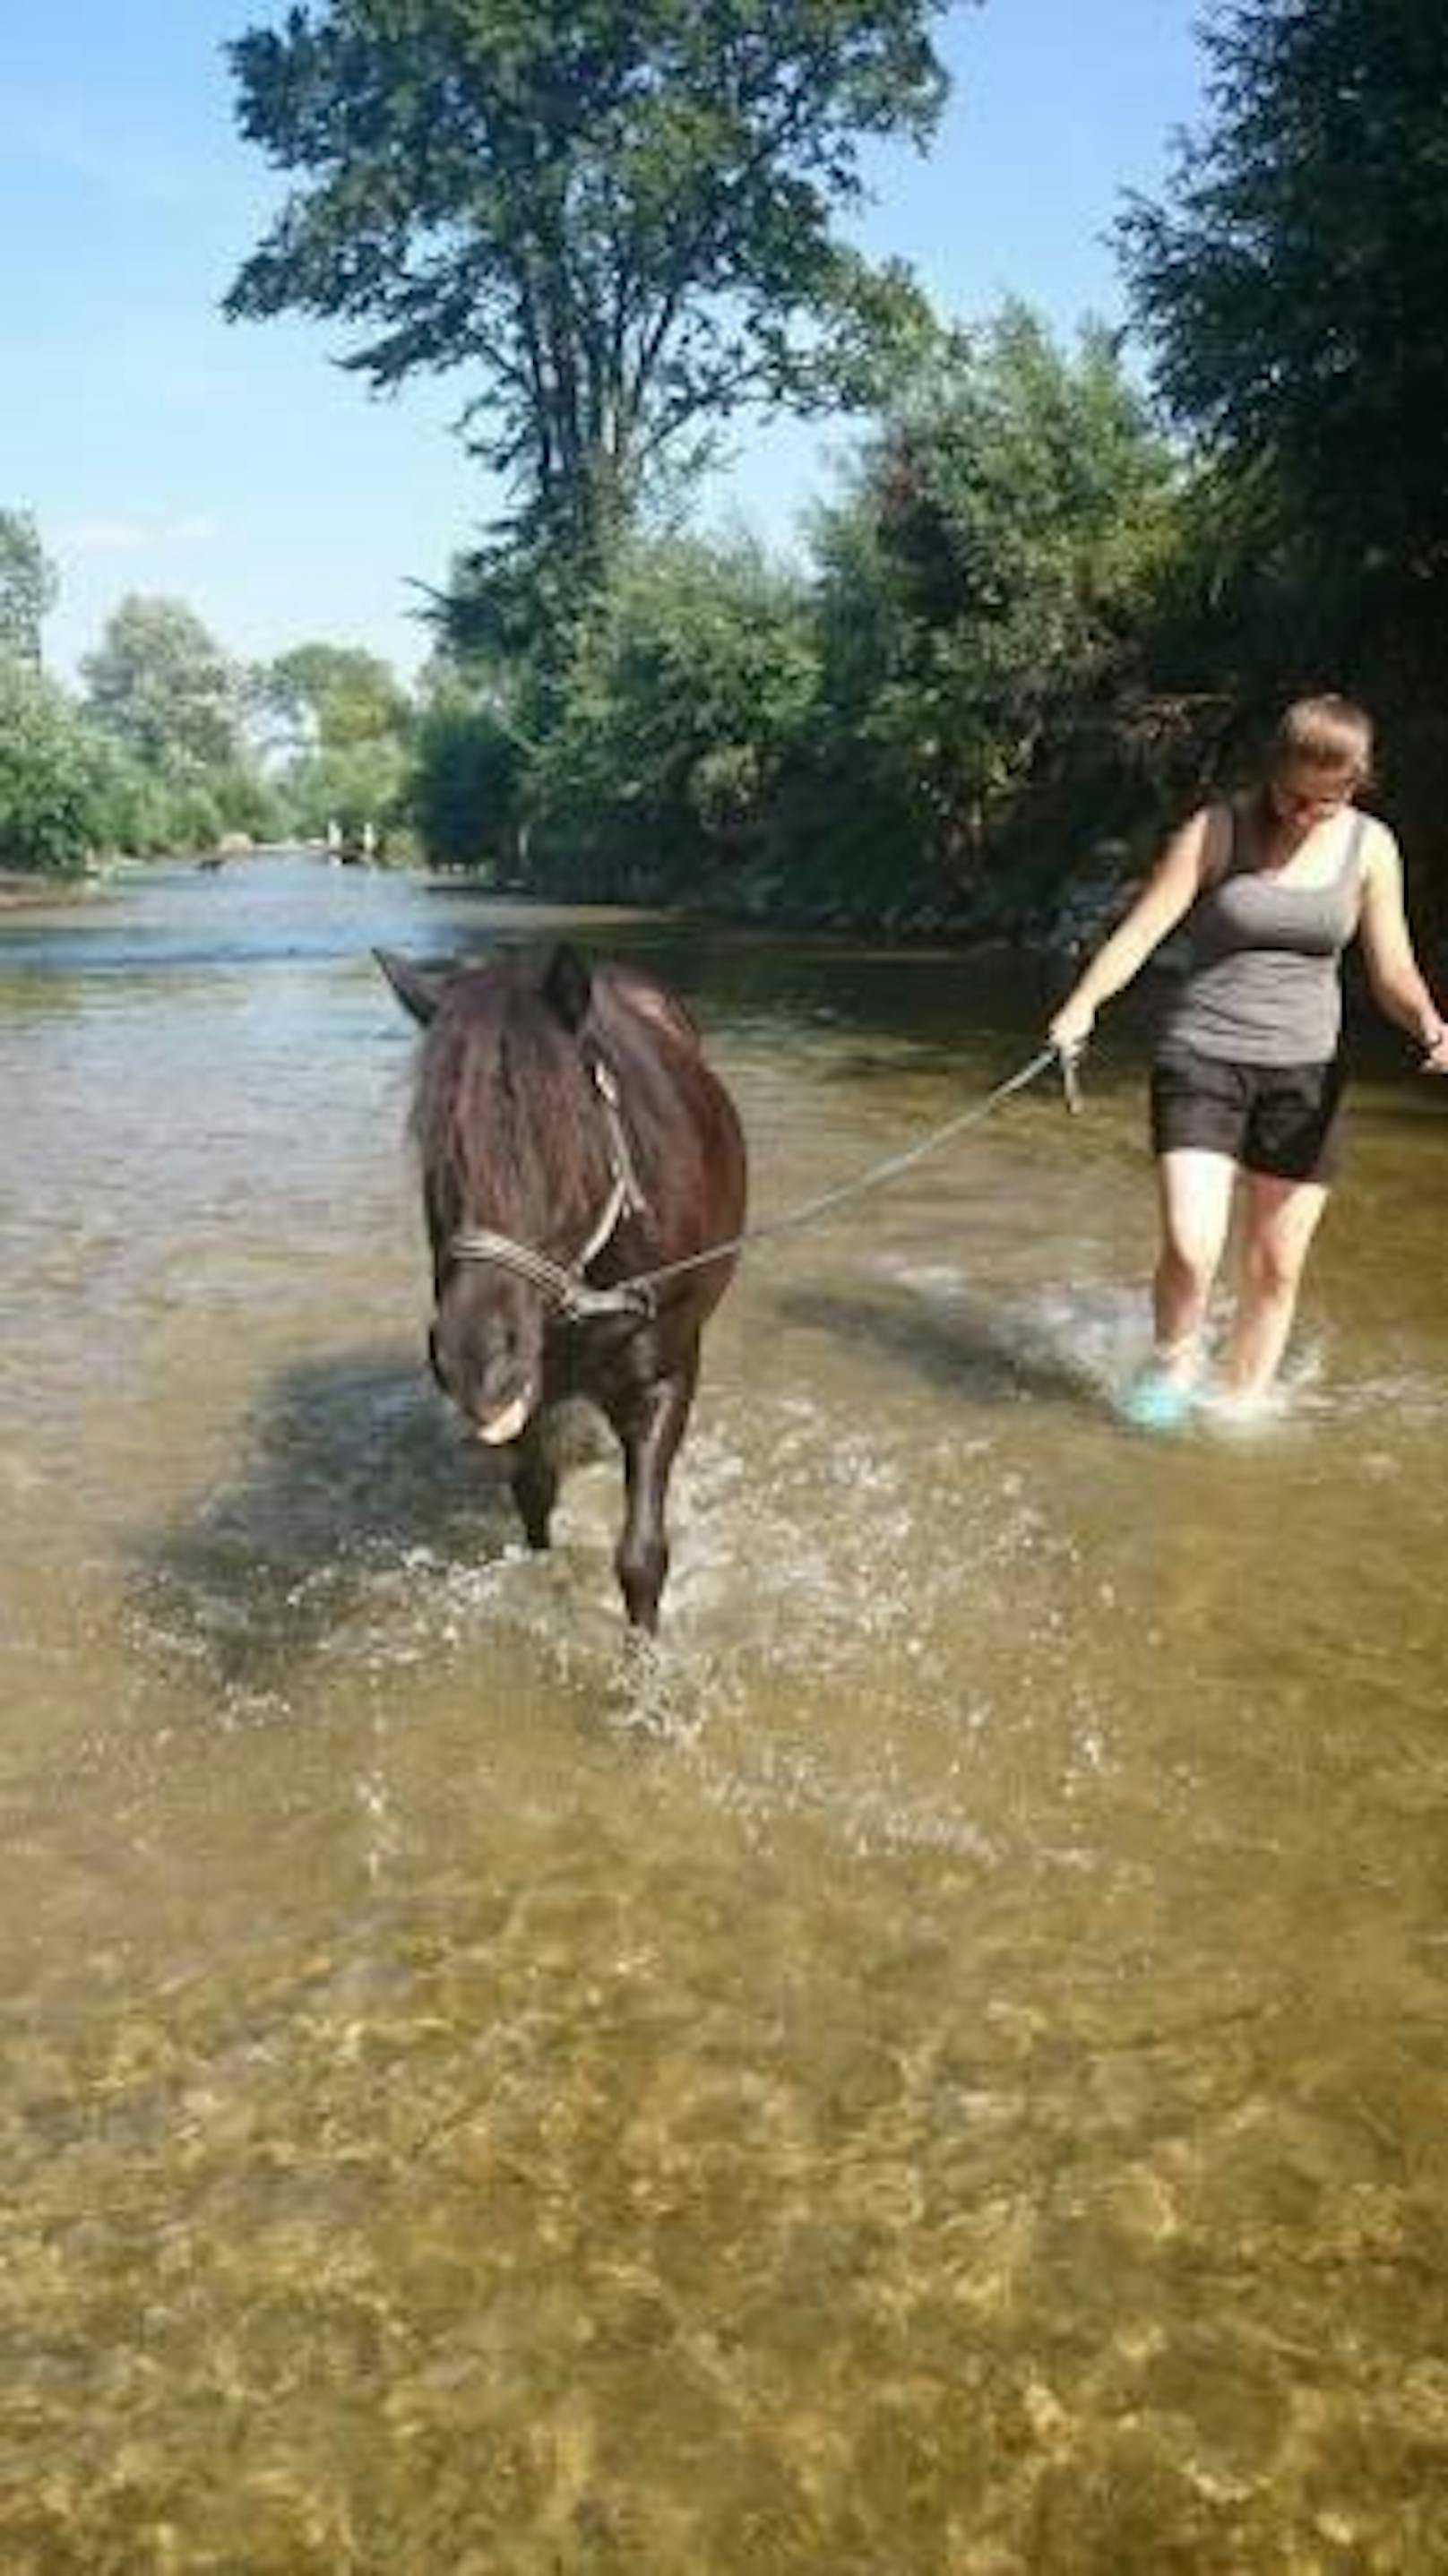 Mit dem Pony ins Wasser, erfrischend für Mensch und Tier.